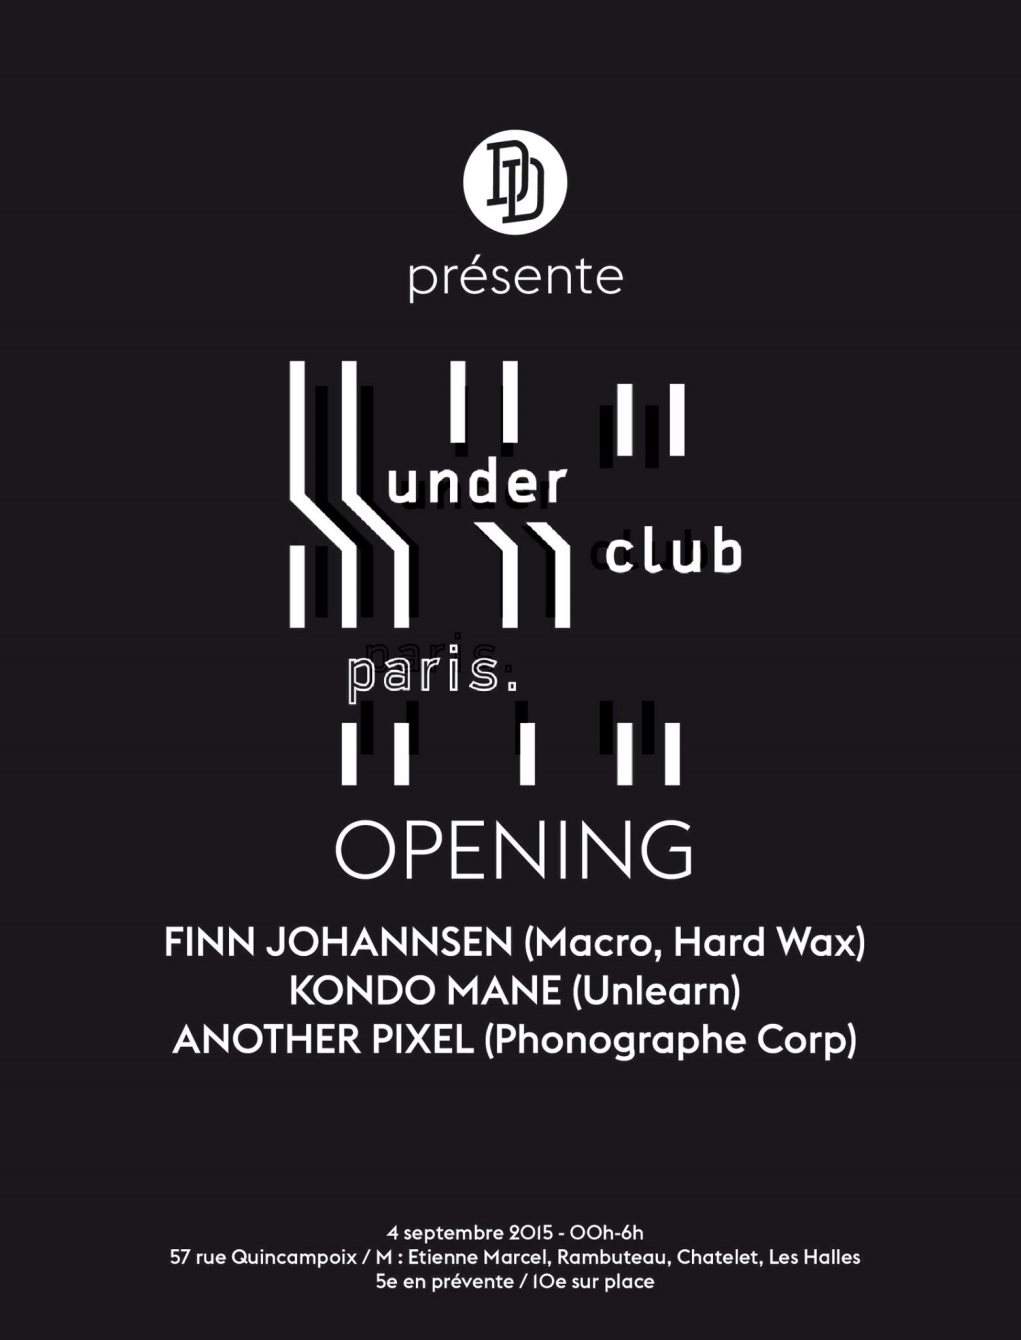 Opening Underclub - Digger's Delight Présente Finn Johannsen, Kondo Mane - フライヤー表